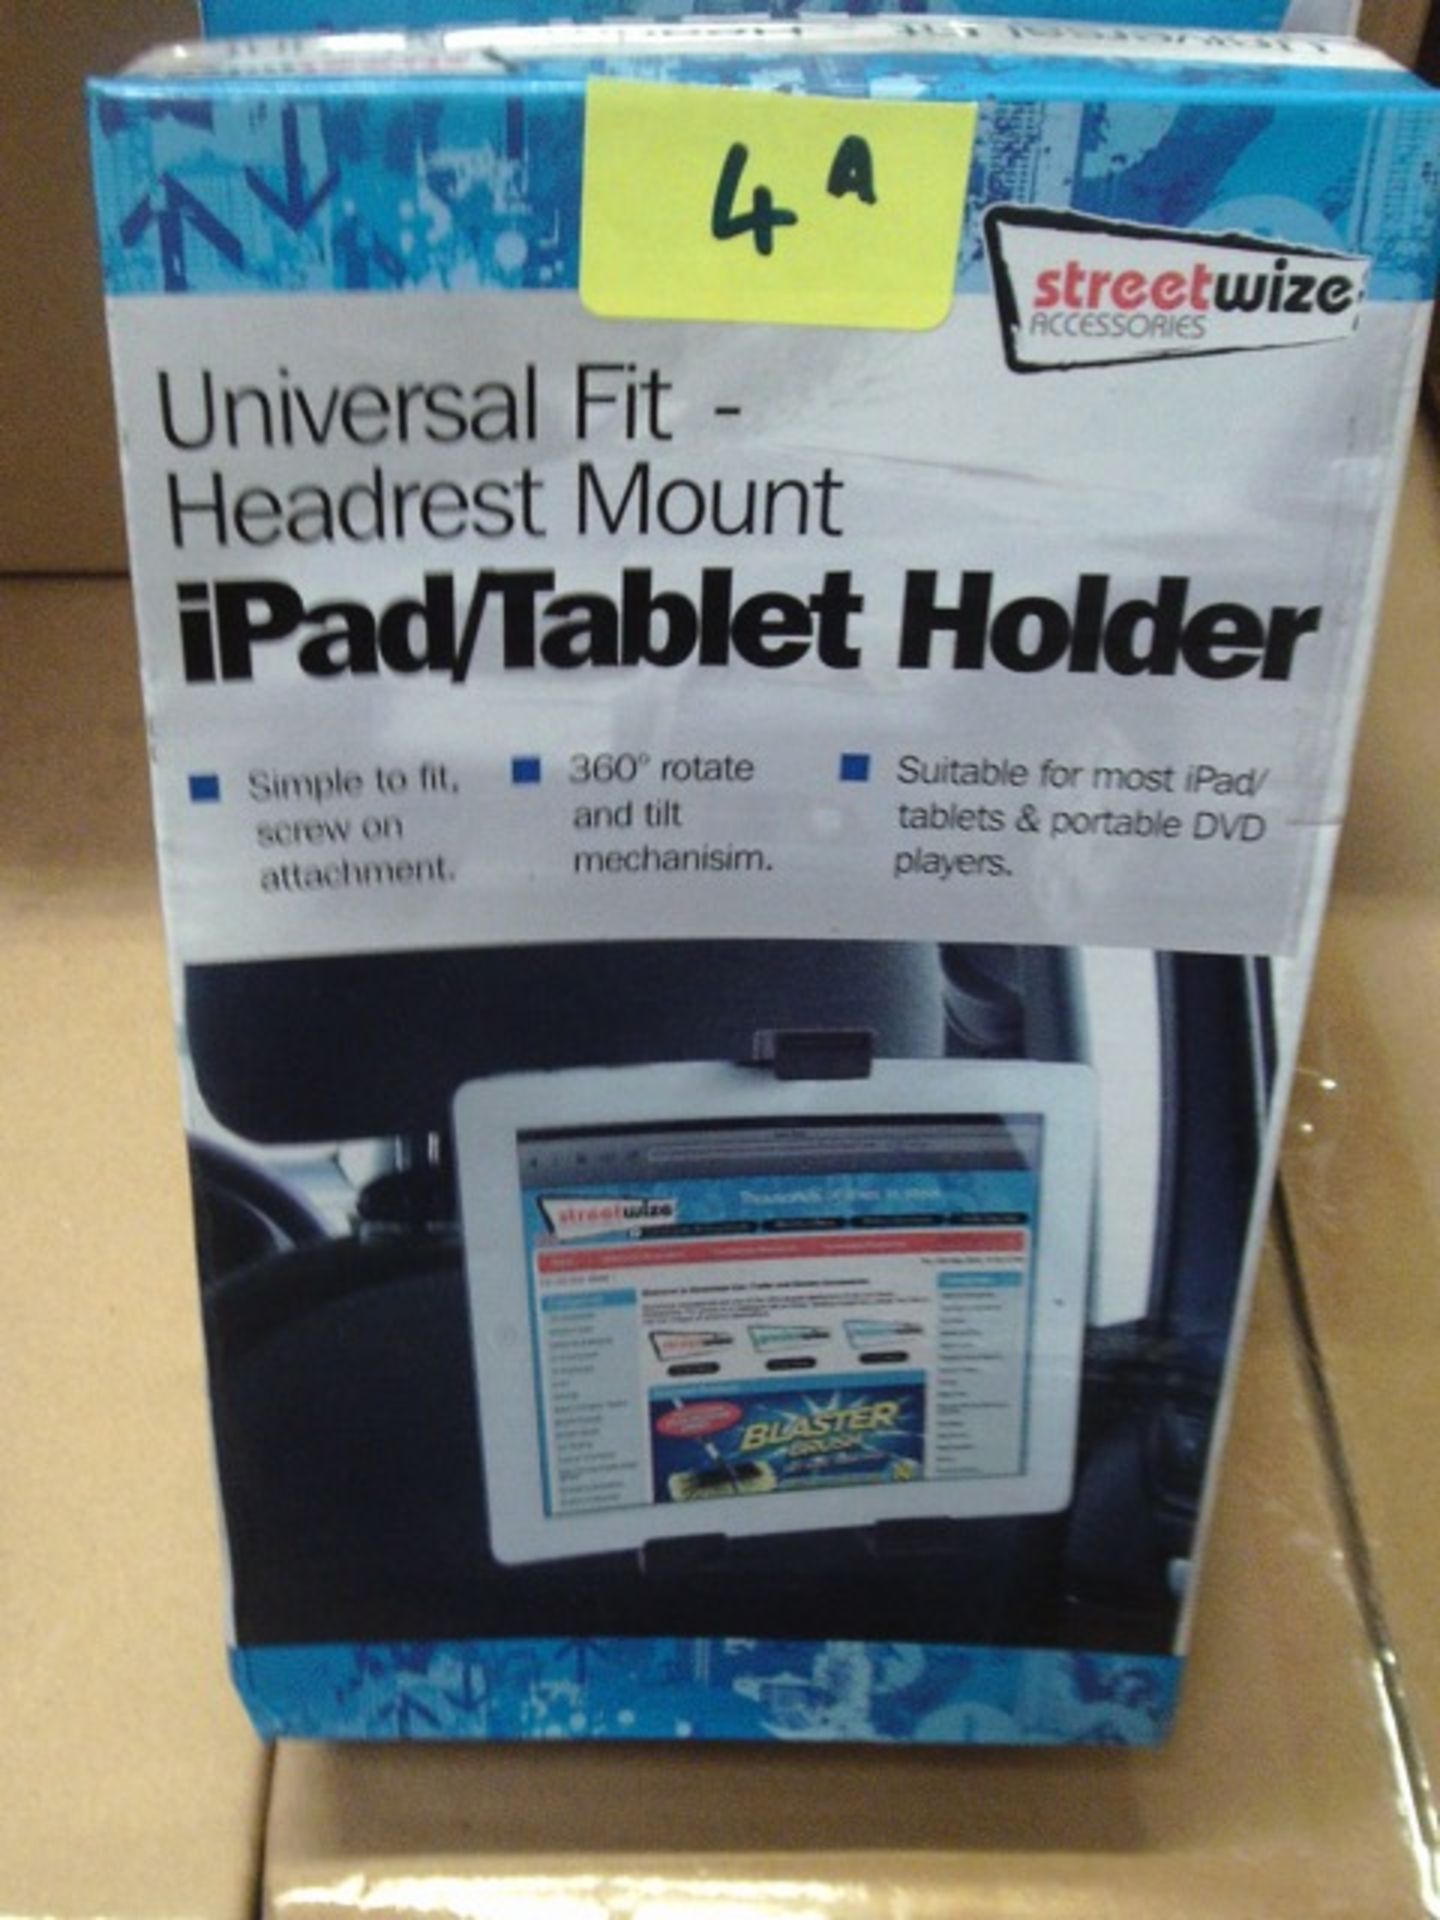 Universal Fit Headeset Mount - Ipad/ Tablet hoder -